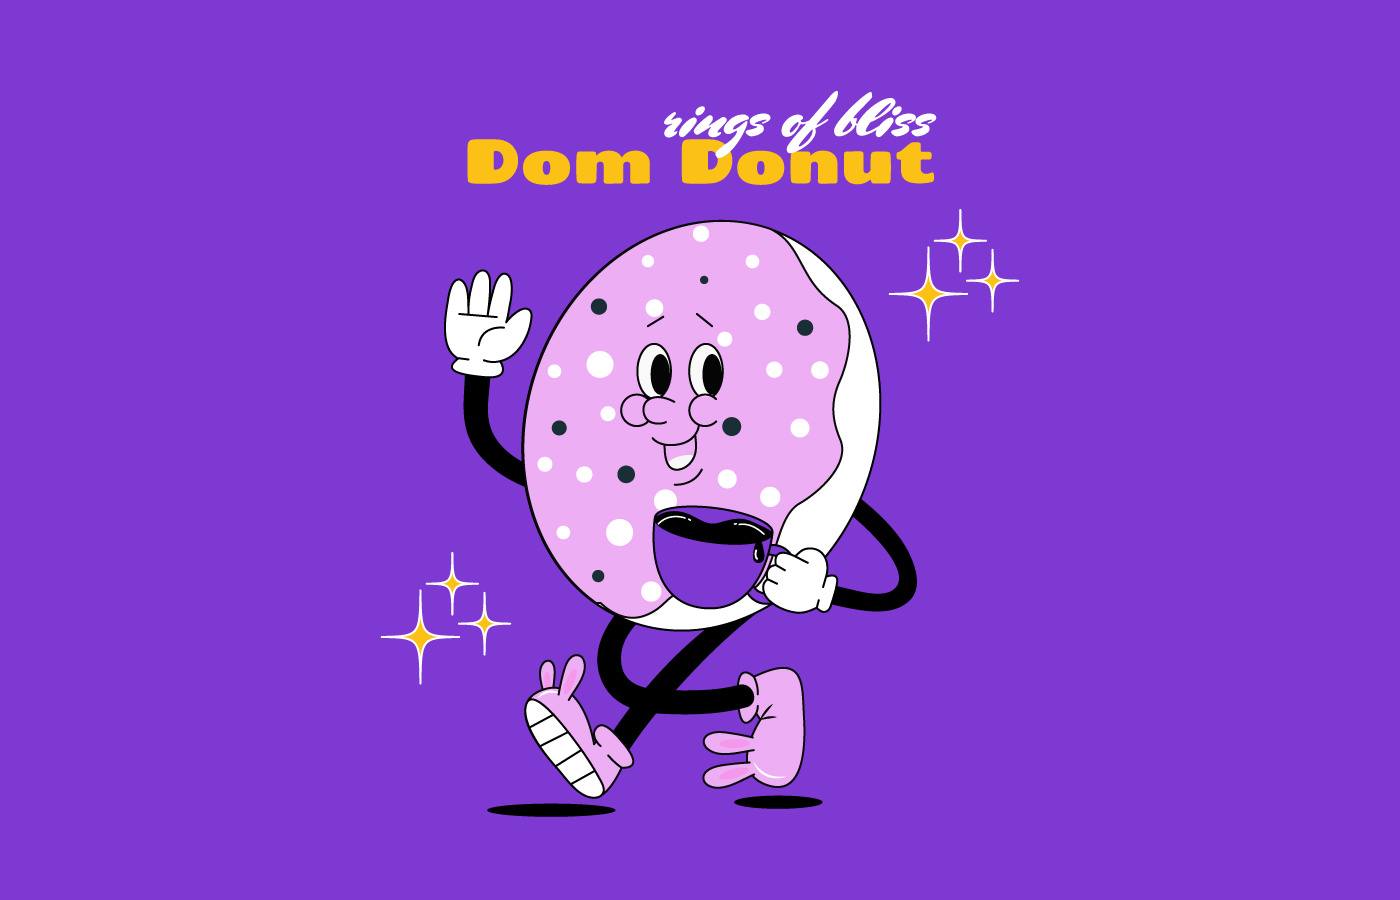 Mascot logo | DONUT logo by Anastasiia Talanova on Dribbble